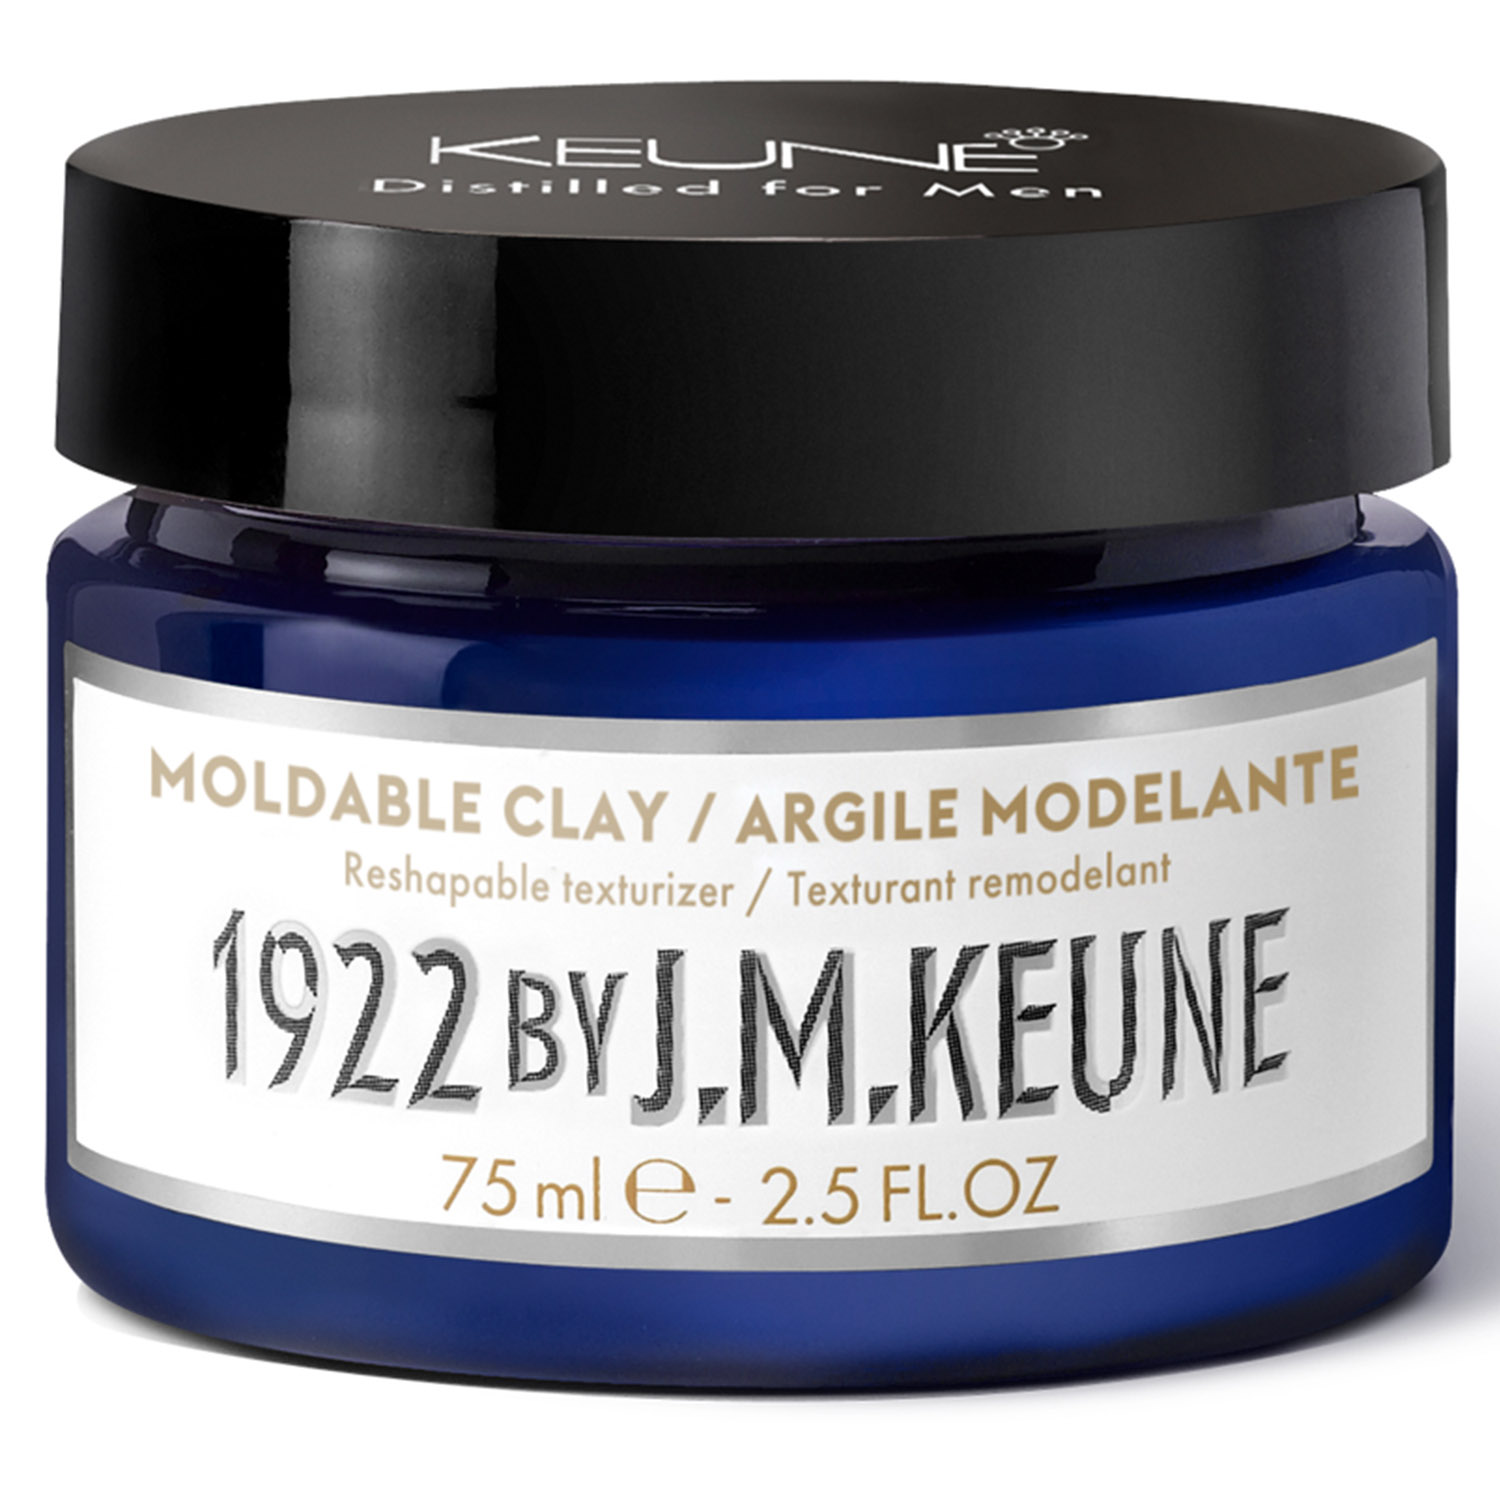 Keune Моделирующая глина для укладки волос Moldable Clay, 75 мл (Keune, 1922 by J.M. Keune)